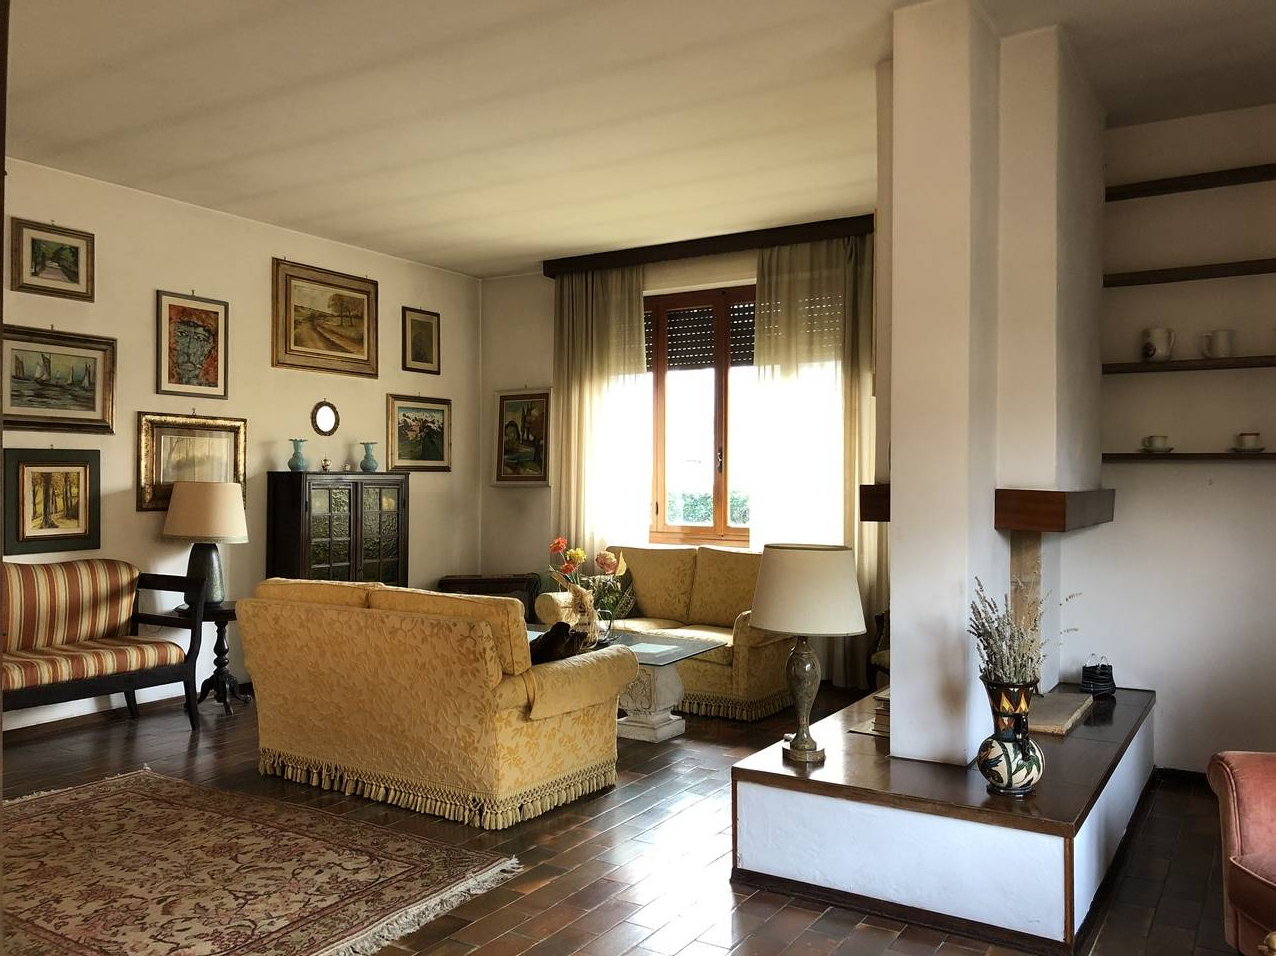 Villa singola in vendita a San Giuliano Terme (PI)